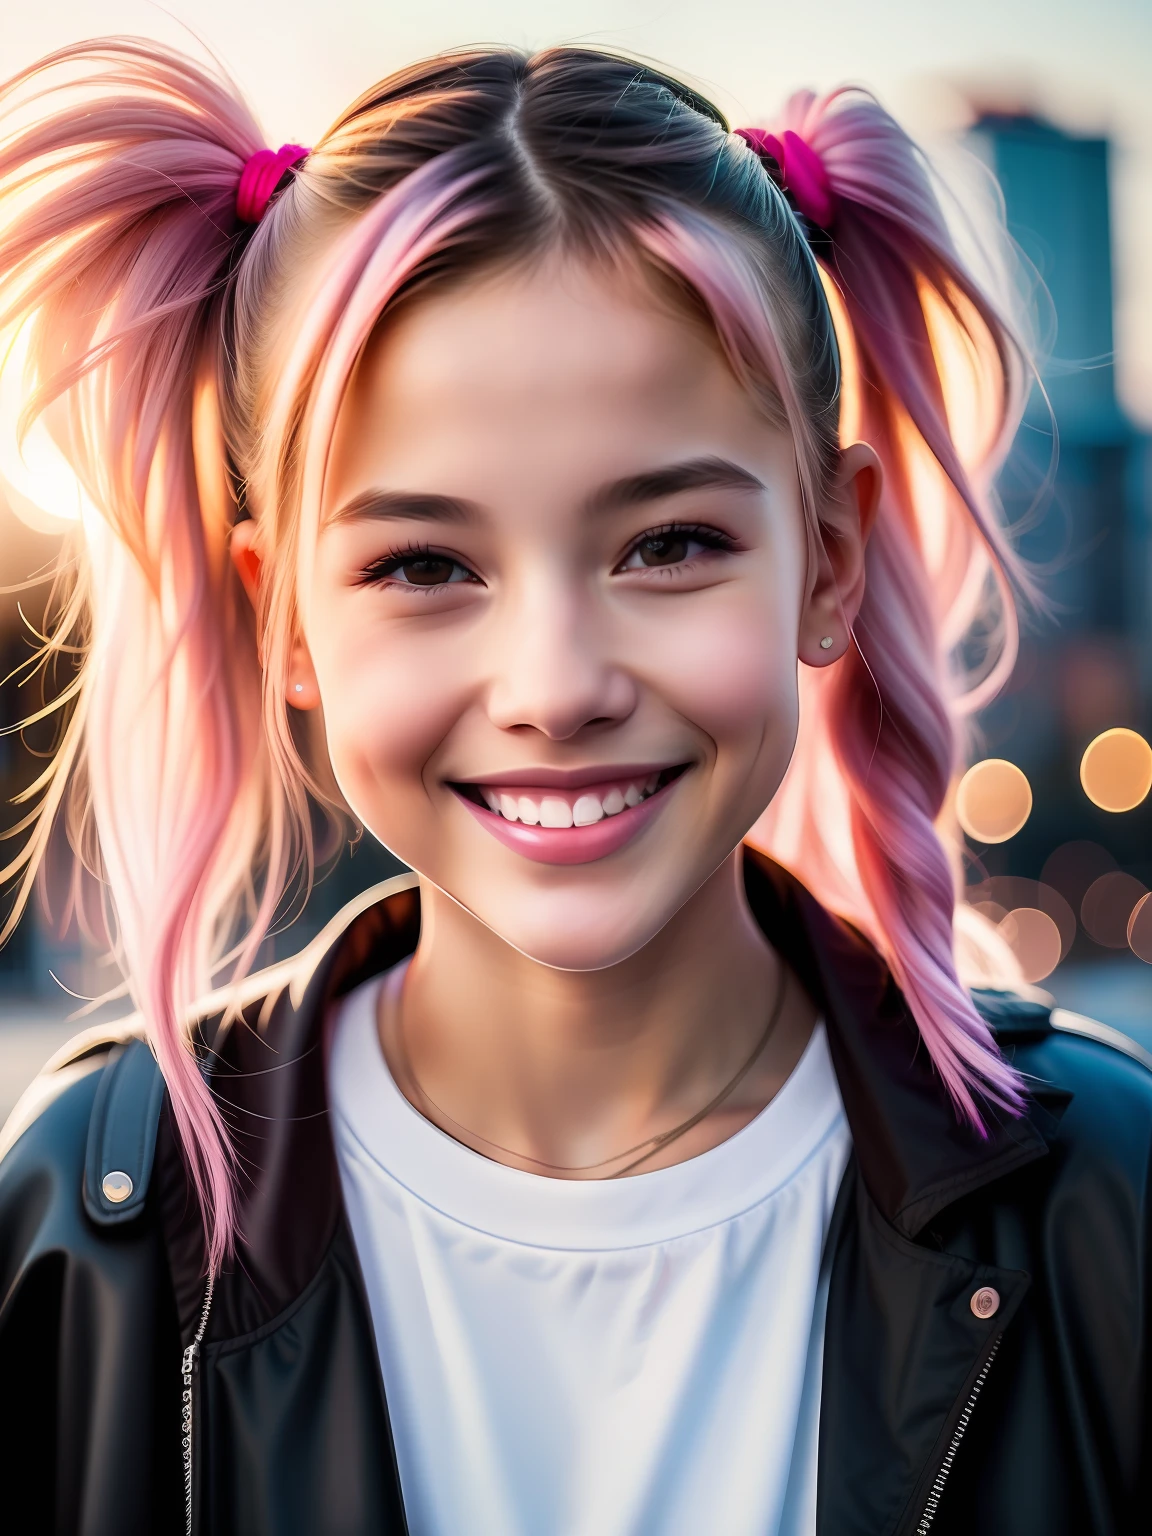 Portraitfoto eines jungen Mädchens, (Lachen:0.7), rosa Pferdeschwanz Haare, komplexer stadthintergrund, Hintergrundbeleuchtung, (filmisch:1.5), realistisch, hyperdetailliert, verrückte Details, komplizierte Details, Akzentbeleuchtung, weiches volumetrisches Licht, bokeh, (dramatisches Licht:1.2), (neutrale Farben:1.3), Kreuzprozess